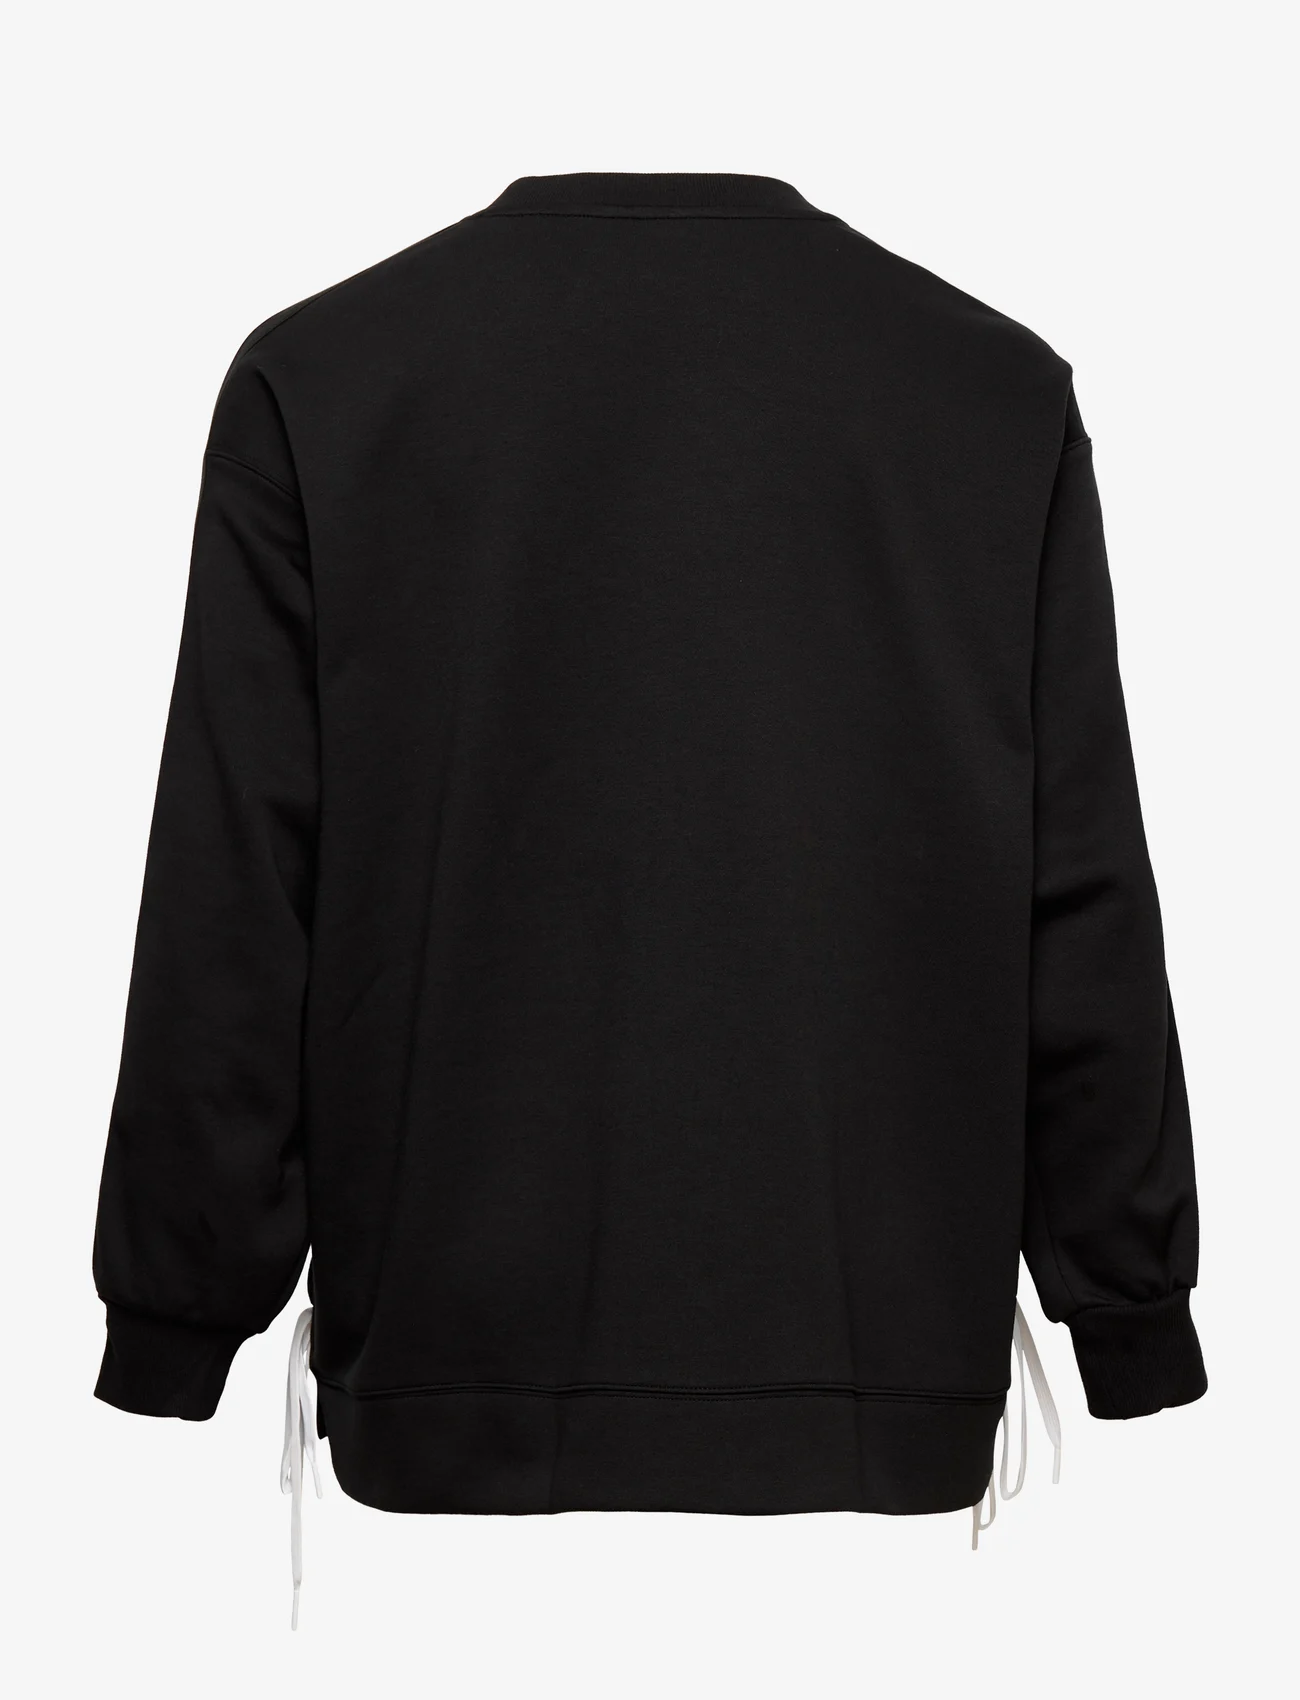 adidas Originals - Always Original Laced Crew Sweatshirt (Plus Size) - naised - black - 1